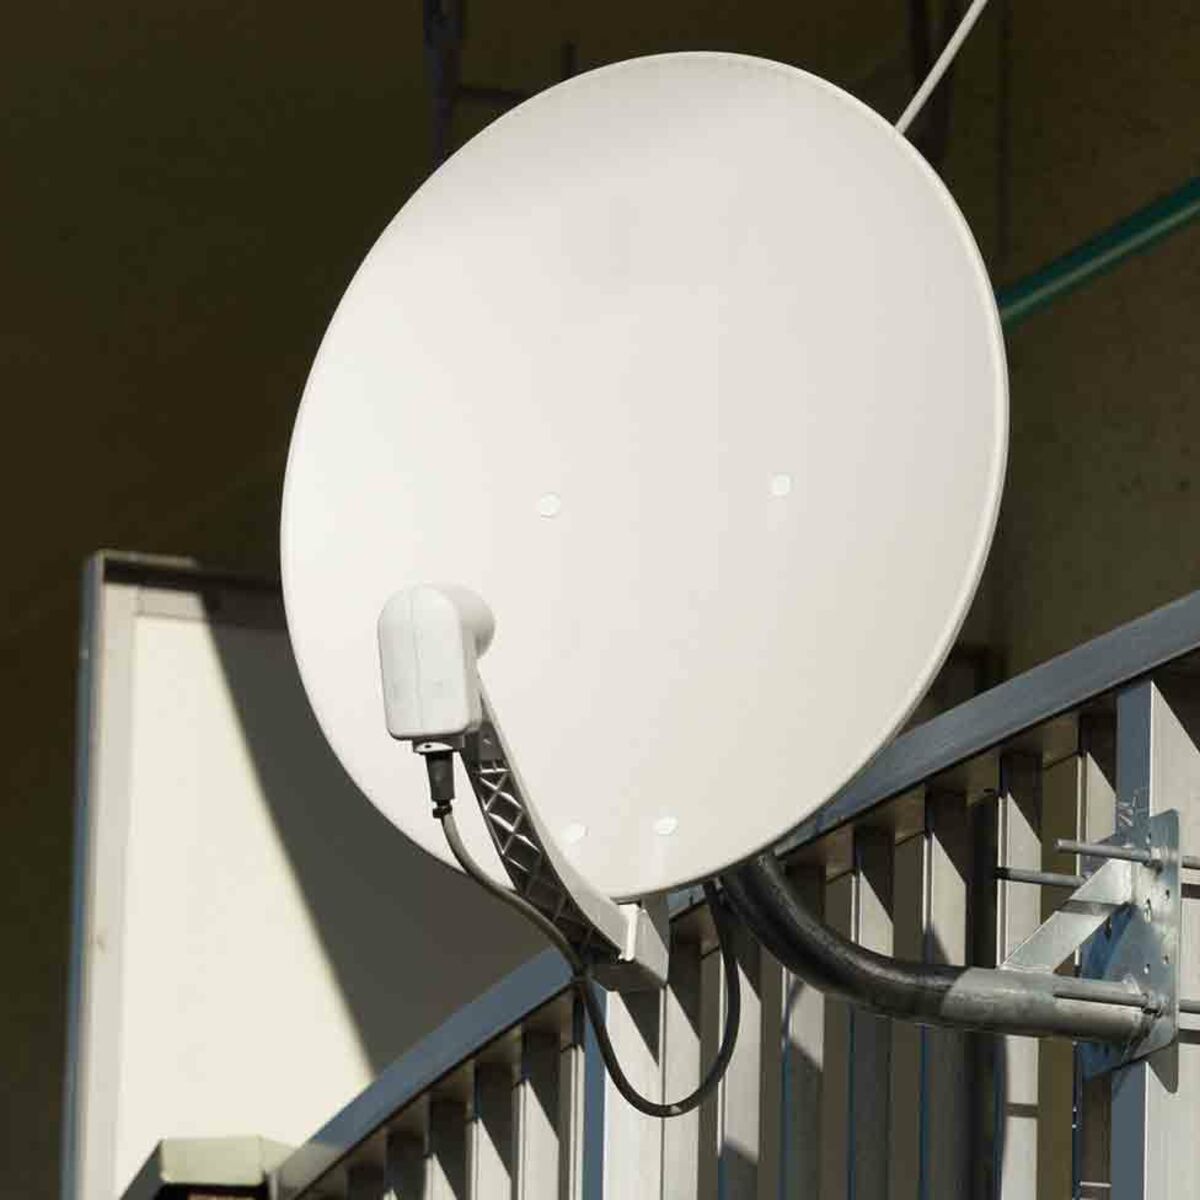 Comment installer une antenne TV terrestre extérieure ? | Leroy Merlin